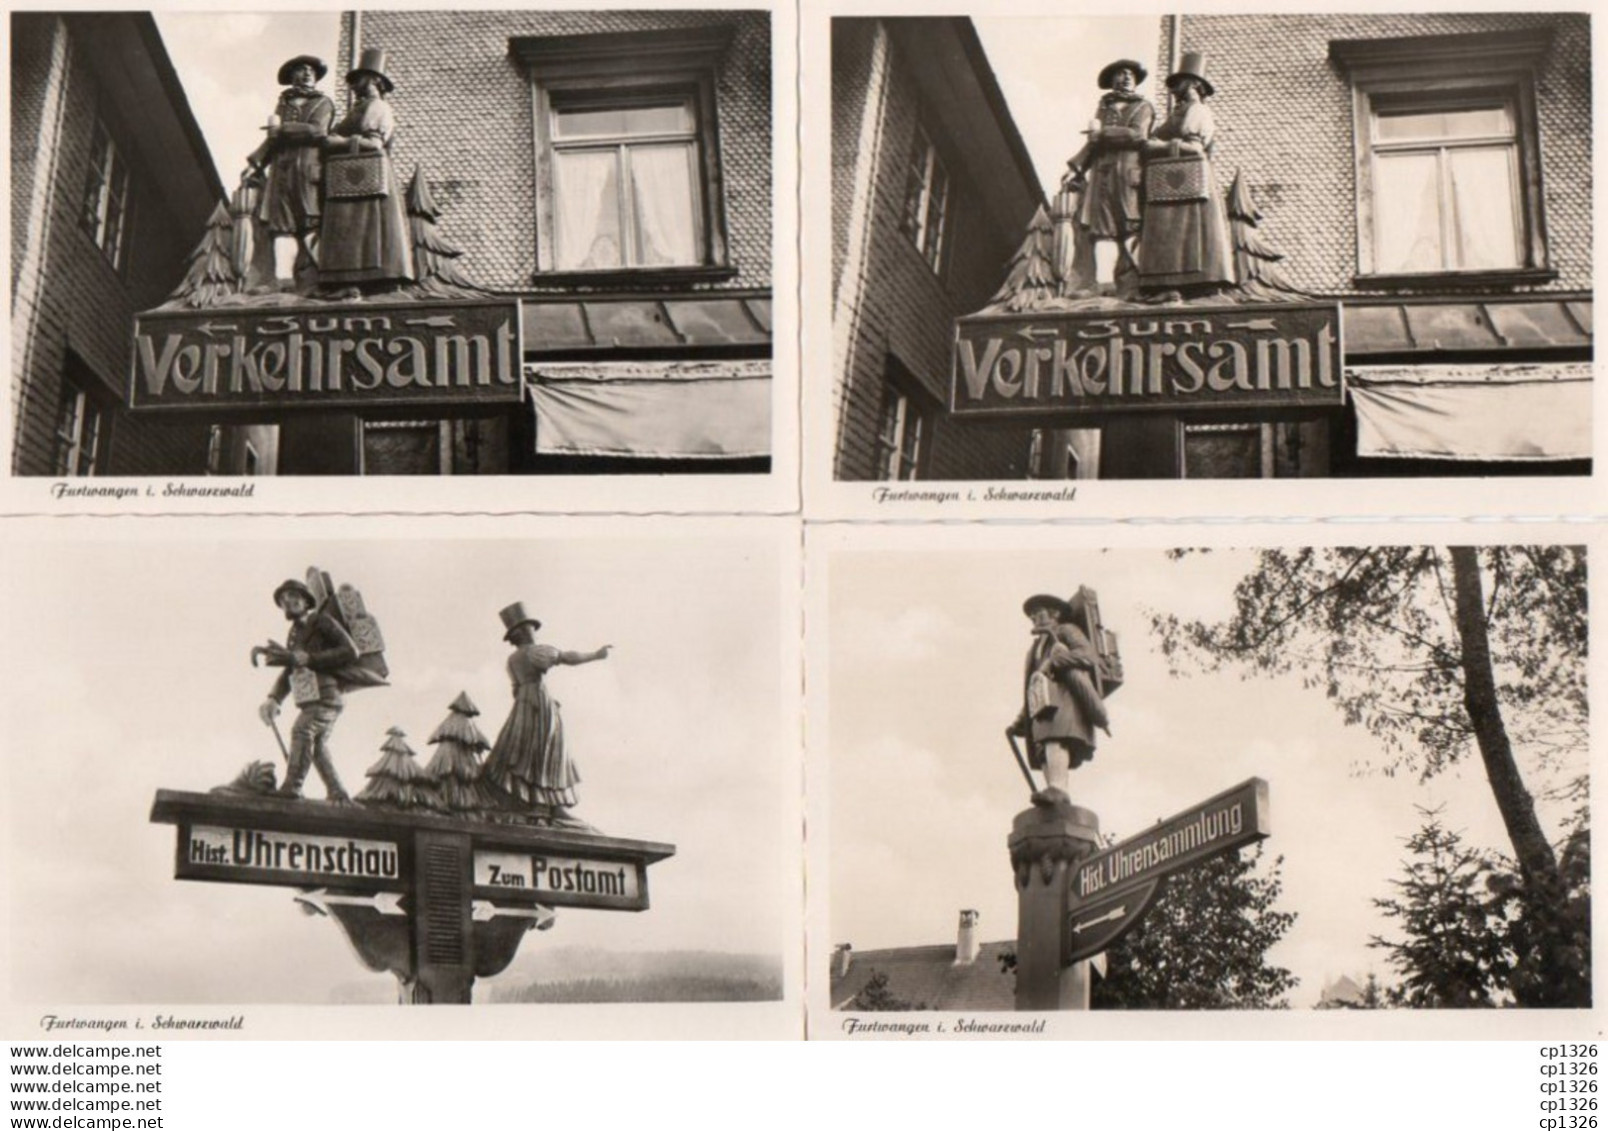 2V11Mx    Alemagne Furtwangen Lot Of 4 Postcards I. Schwarzwald - Furtwangen